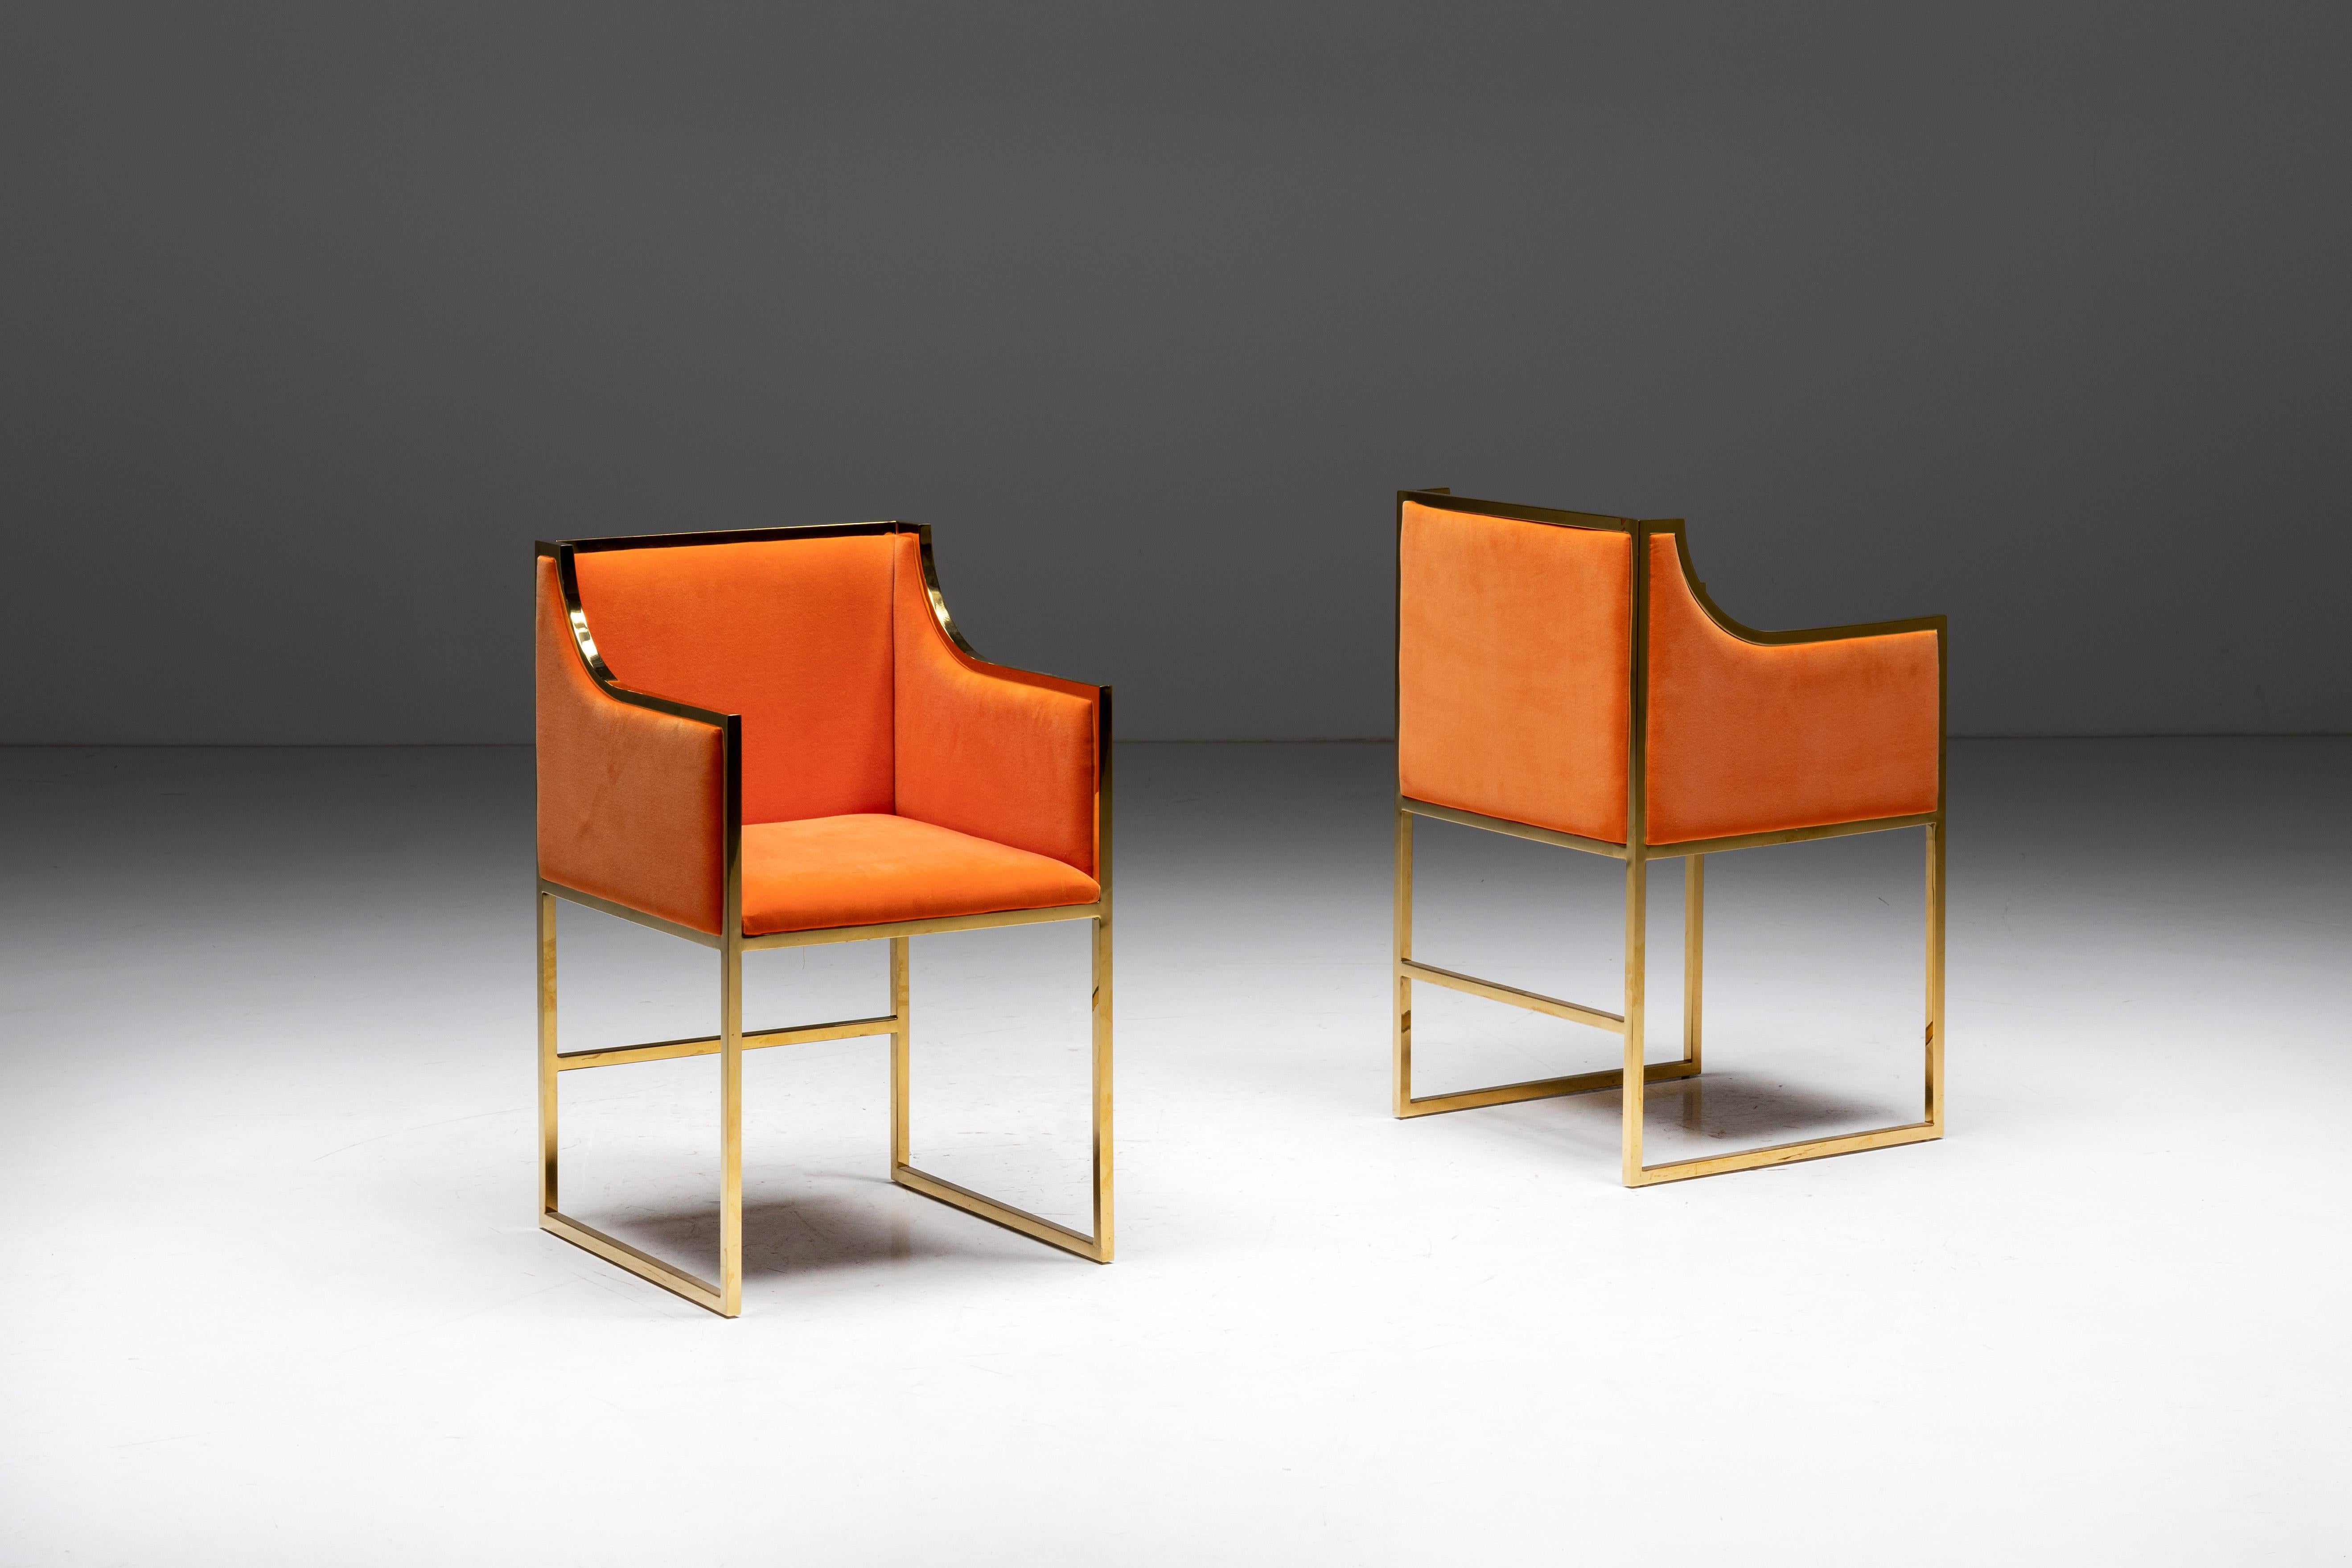 Exquisite Esszimmerstühle aus orangefarbenem Samt, die an den ikonischen Stil von Maison Jansen aus den 1980er Jahren in Frankreich erinnern. Dieses atemberaubende Stuhlset, das sich in einem tadellosen Zustand befindet, strahlt zeitlose Eleganz und